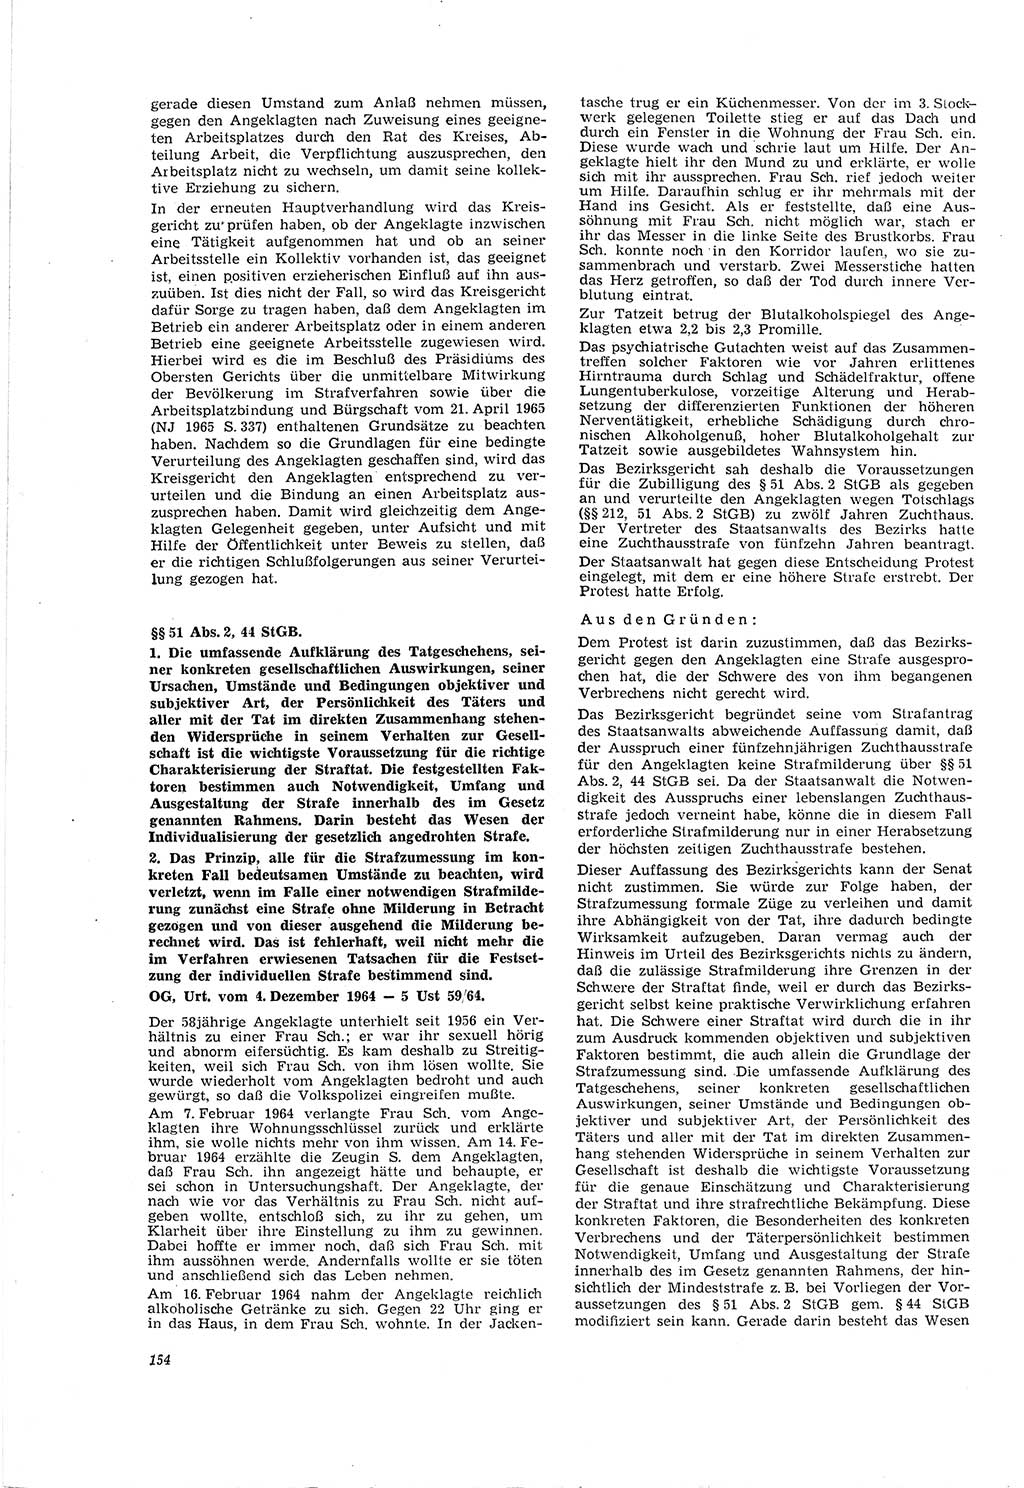 Neue Justiz (NJ), Zeitschrift für Recht und Rechtswissenschaft [Deutsche Demokratische Republik (DDR)], 20. Jahrgang 1966, Seite 154 (NJ DDR 1966, S. 154)